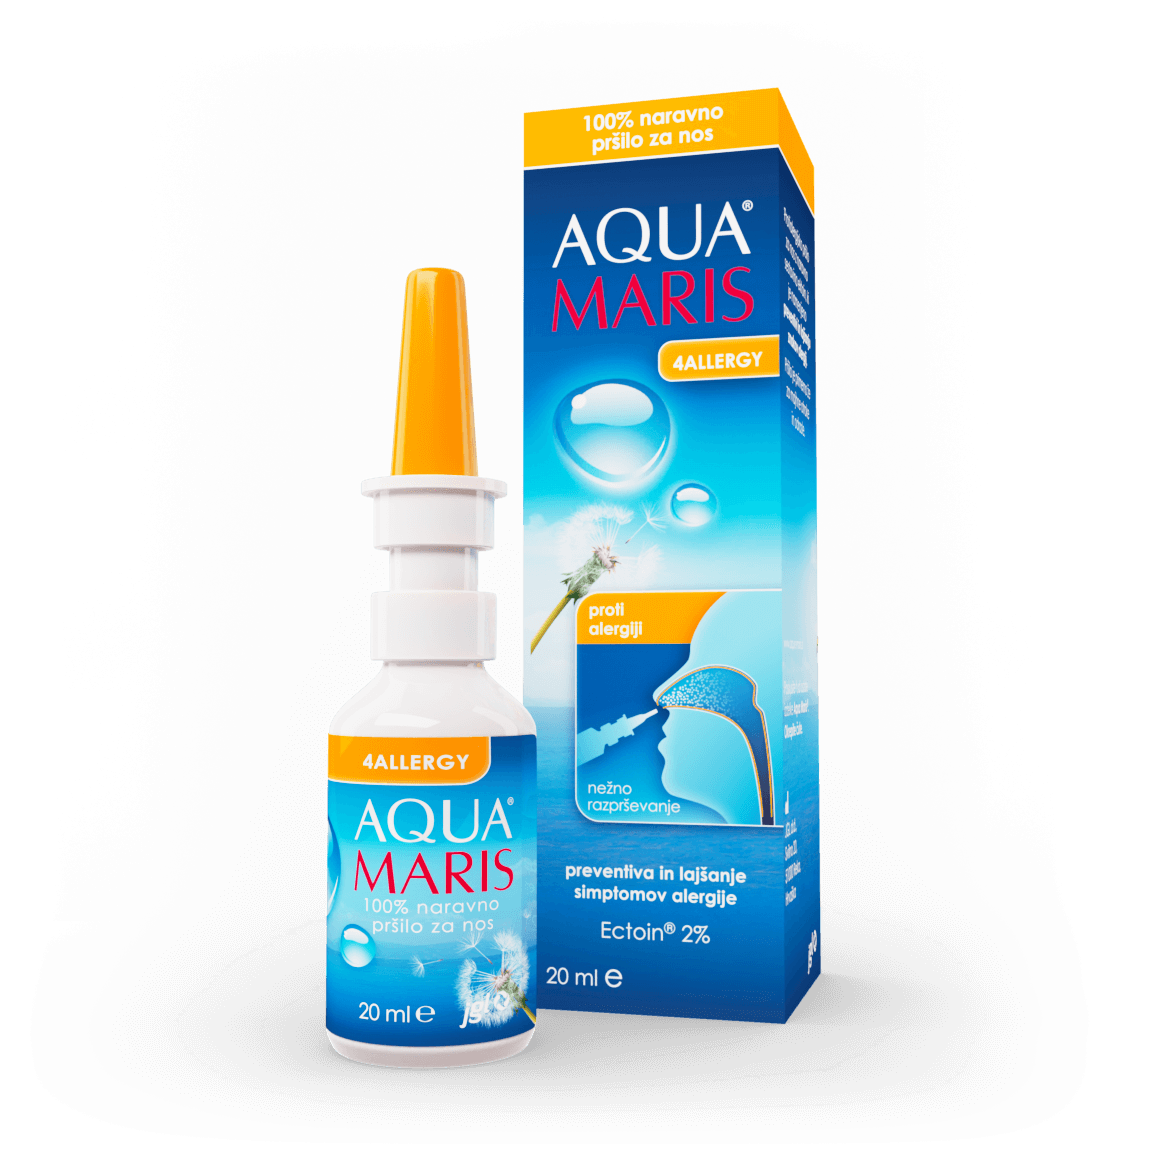 Aqua Maris 4Allergy